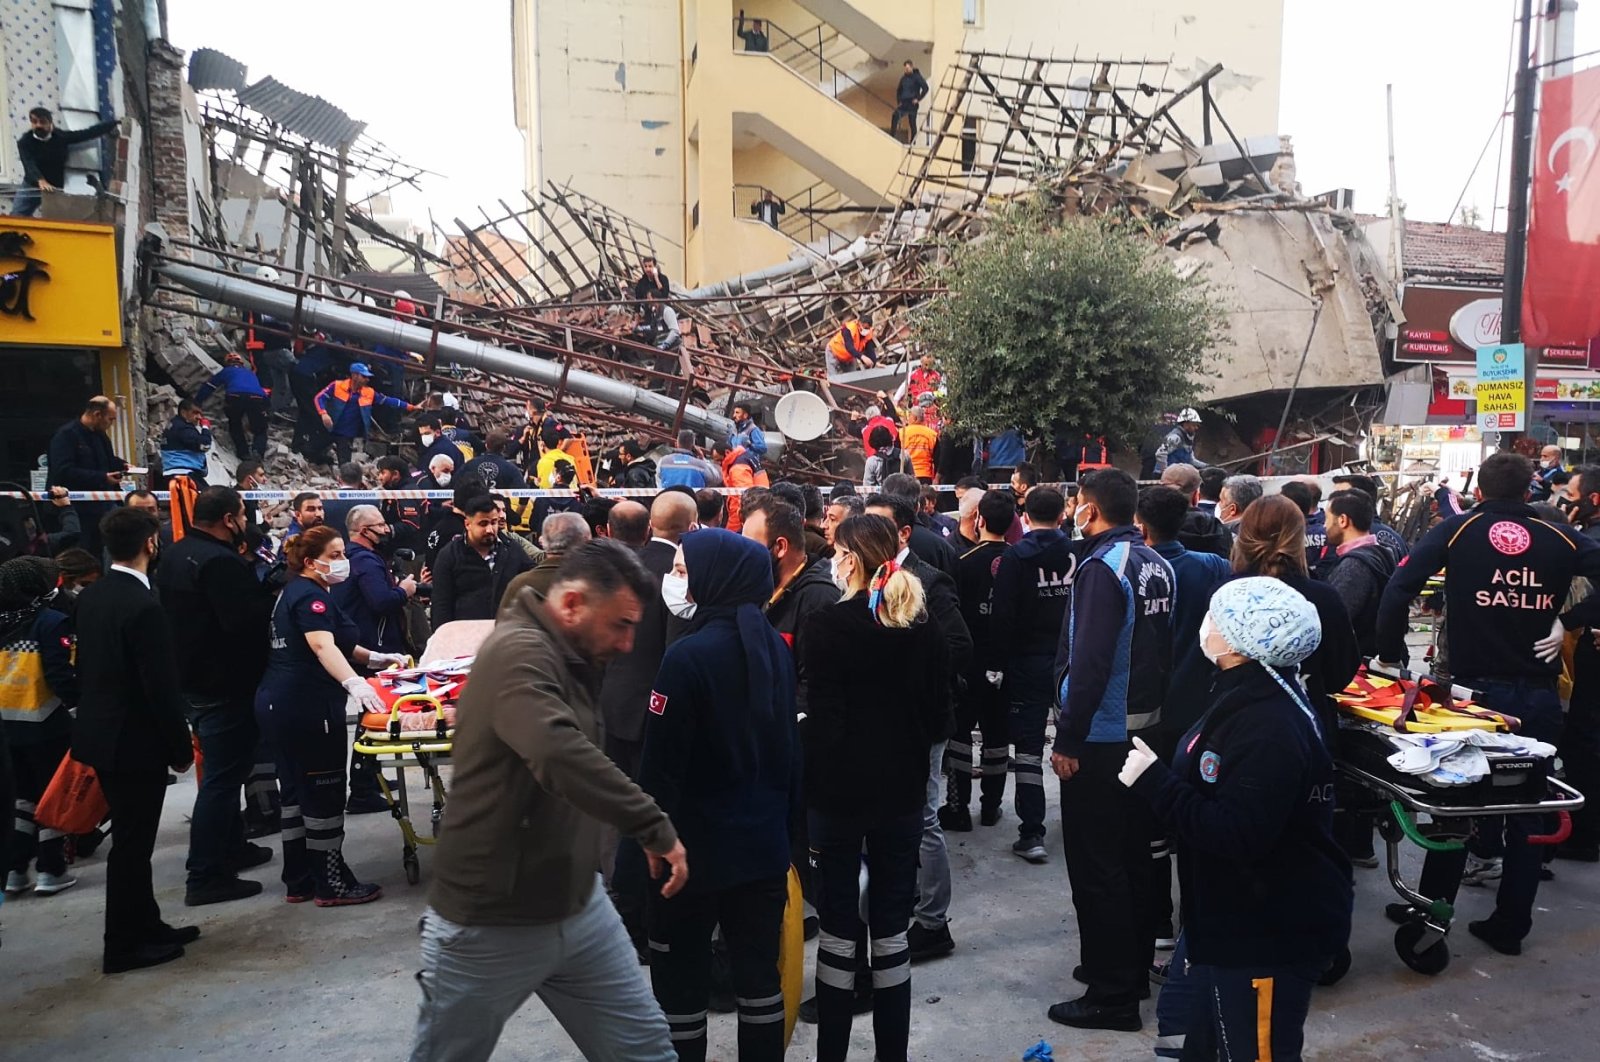 13 terluka saat bangunan runtuh di Malatya . Turki